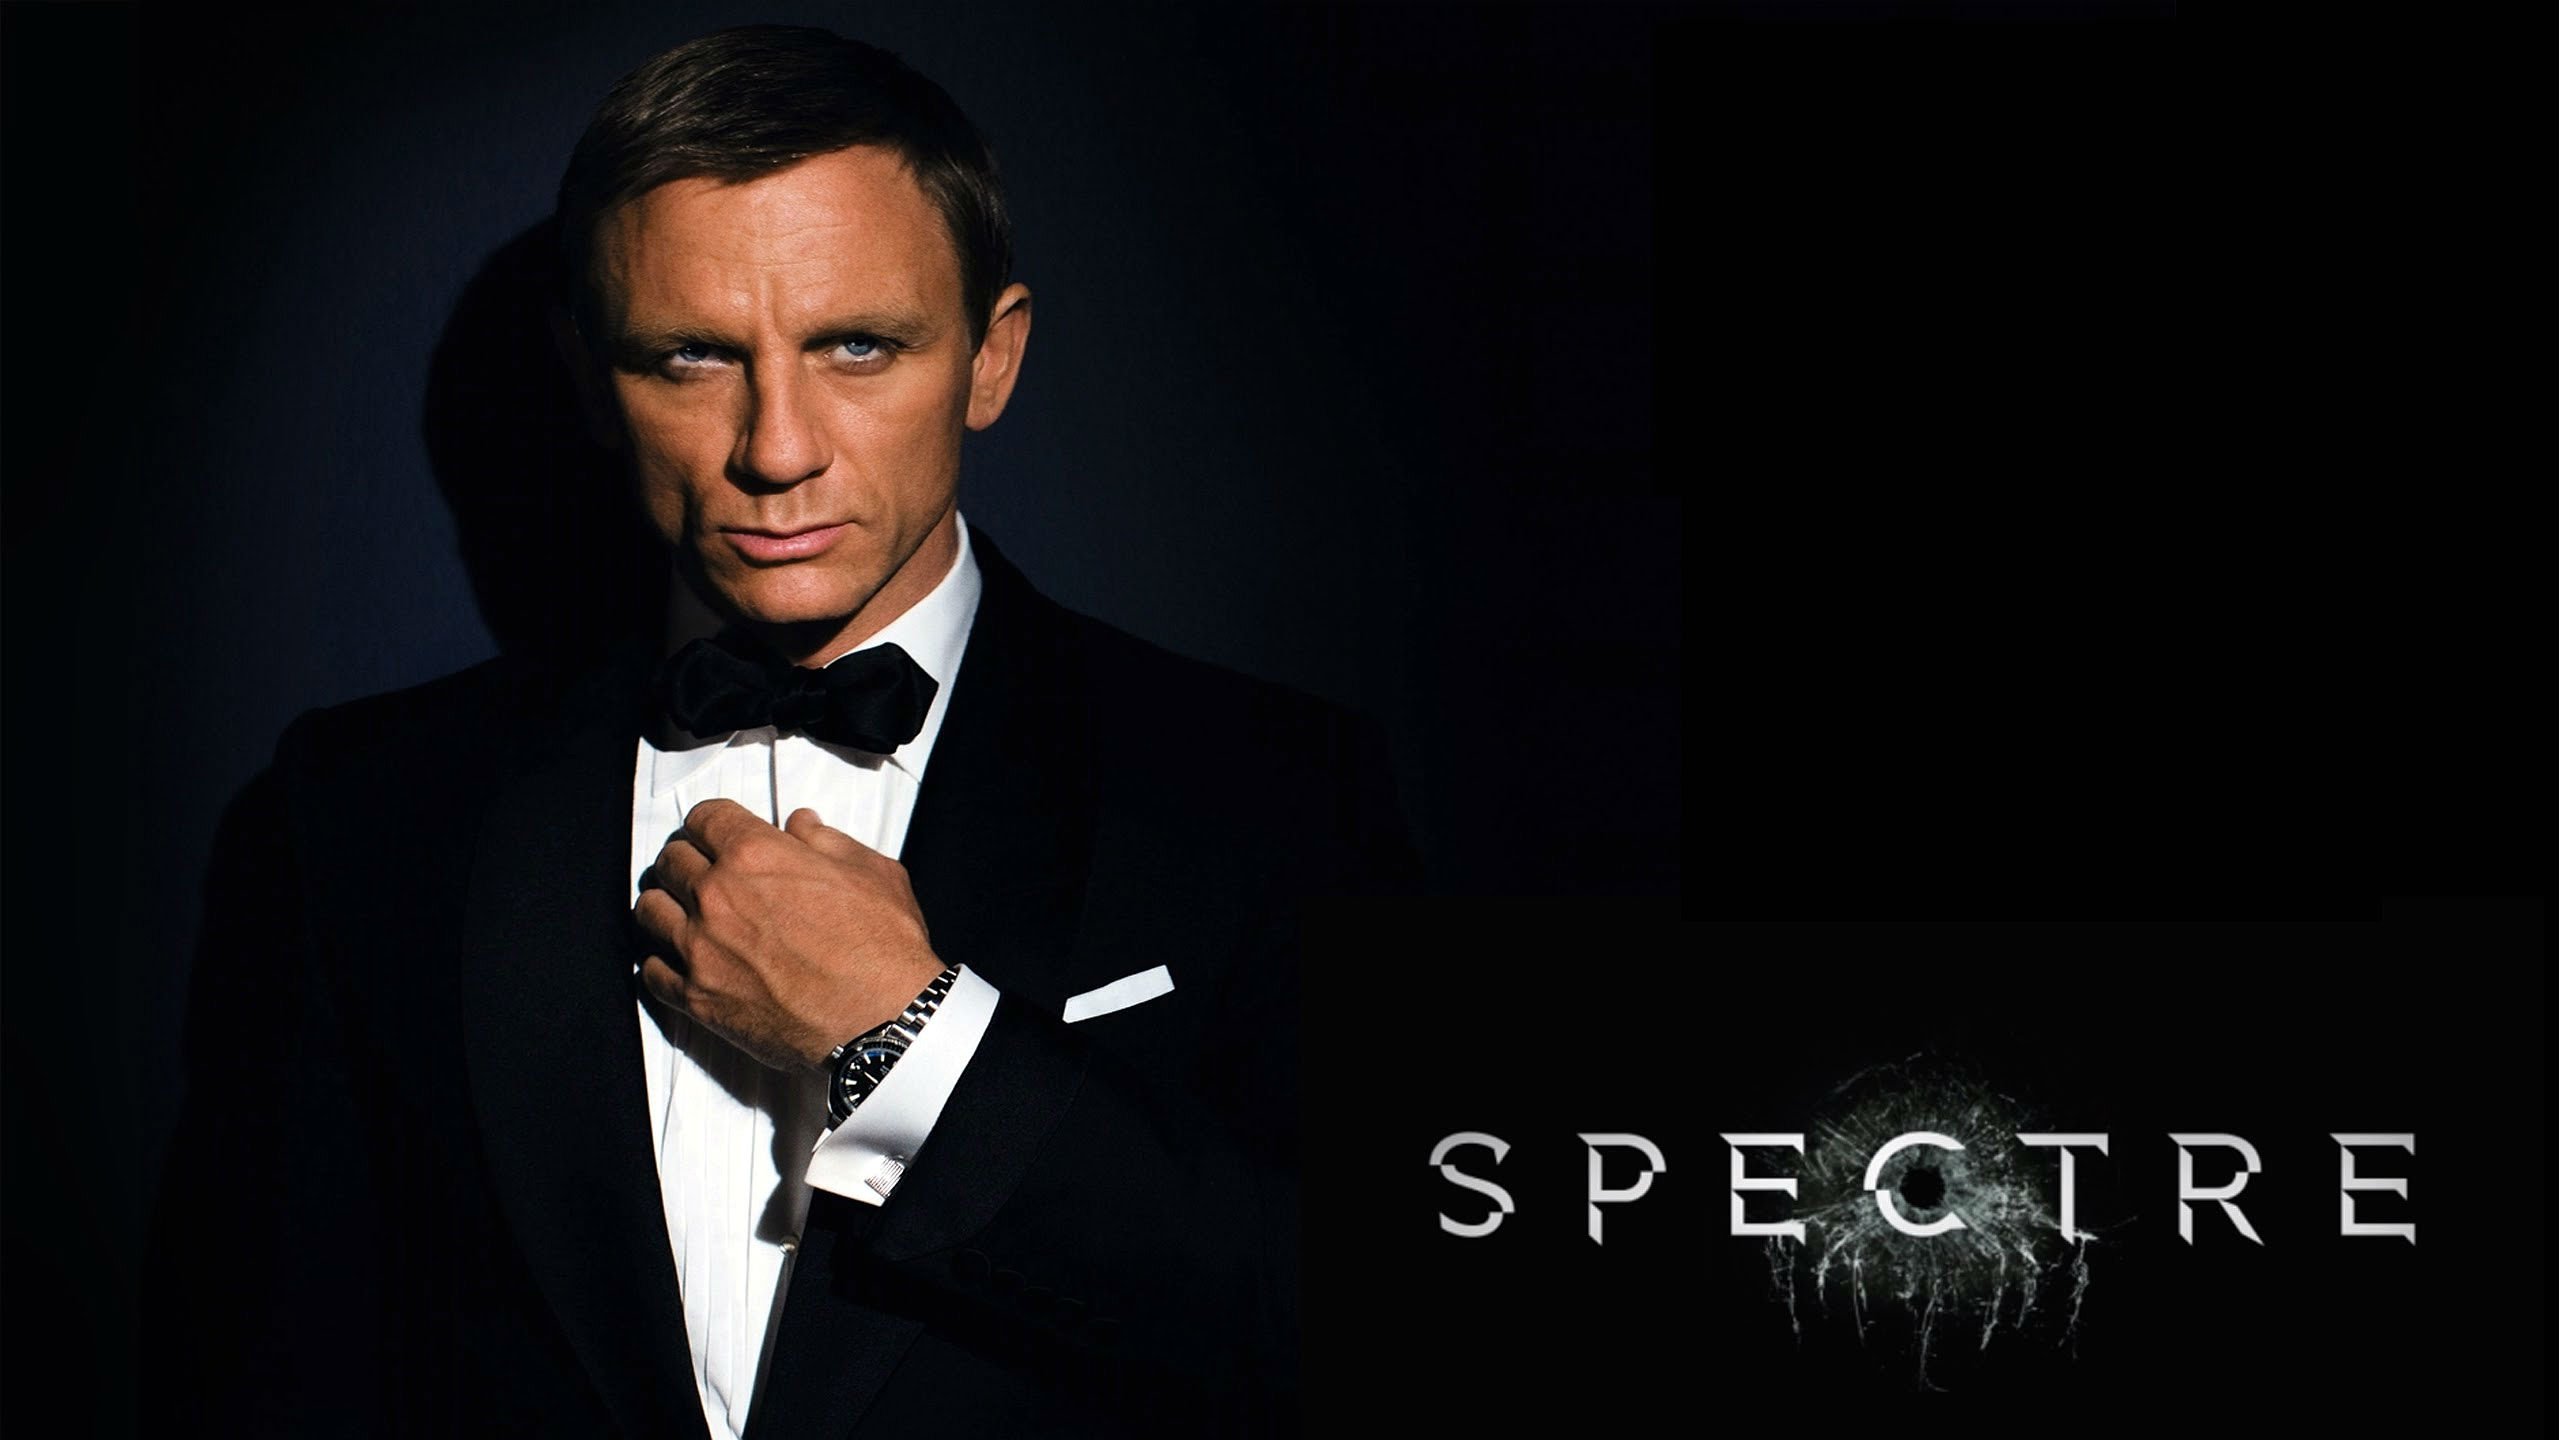 James Bond Spectre 007 Wallpapers HD Desktop • iPhones Wallpapers